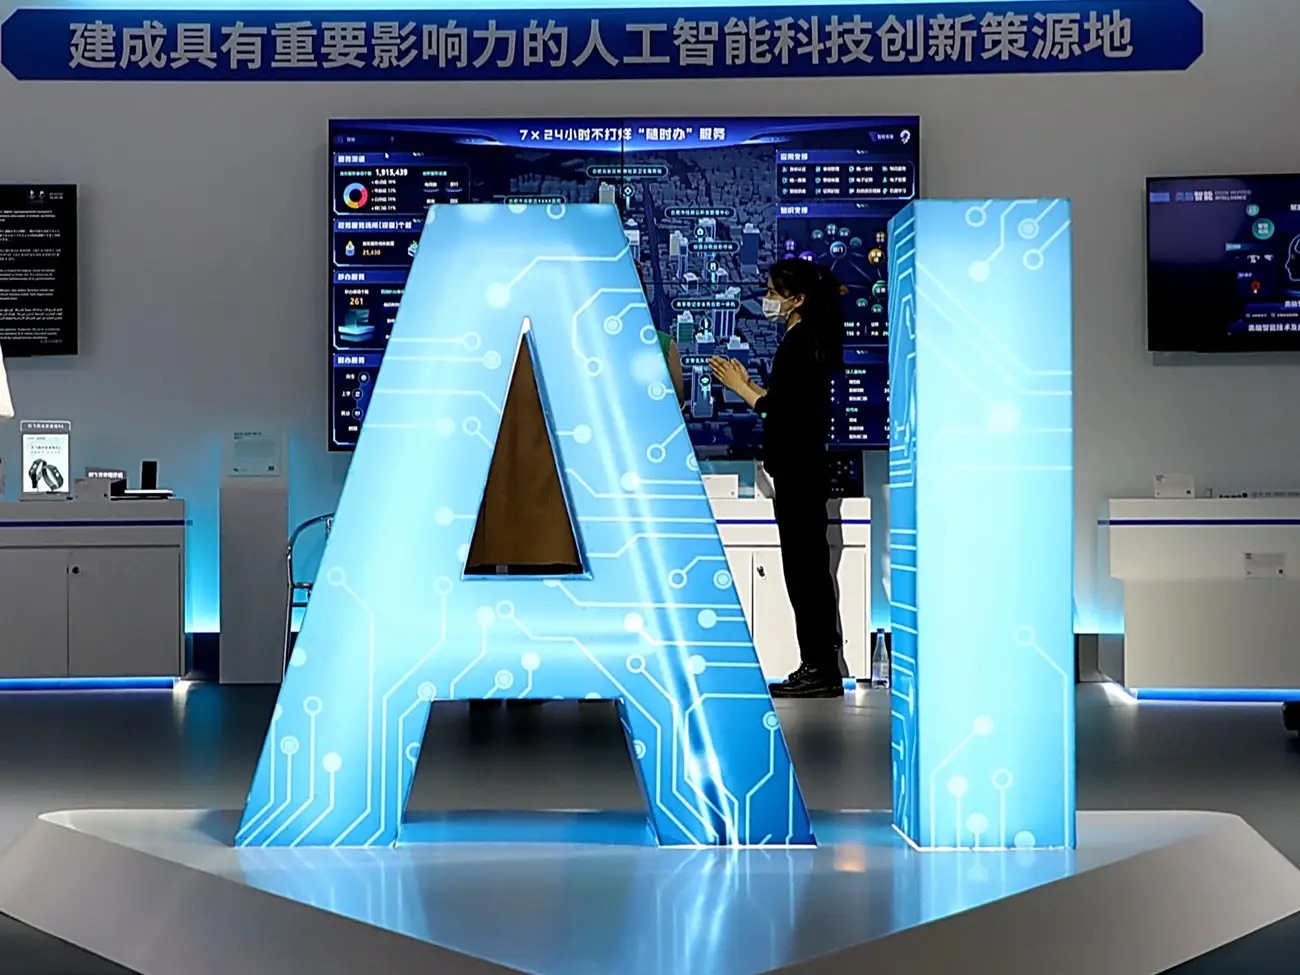 Các khóa học về AI nở rộ ở Trung Quốc - Ảnh 1.